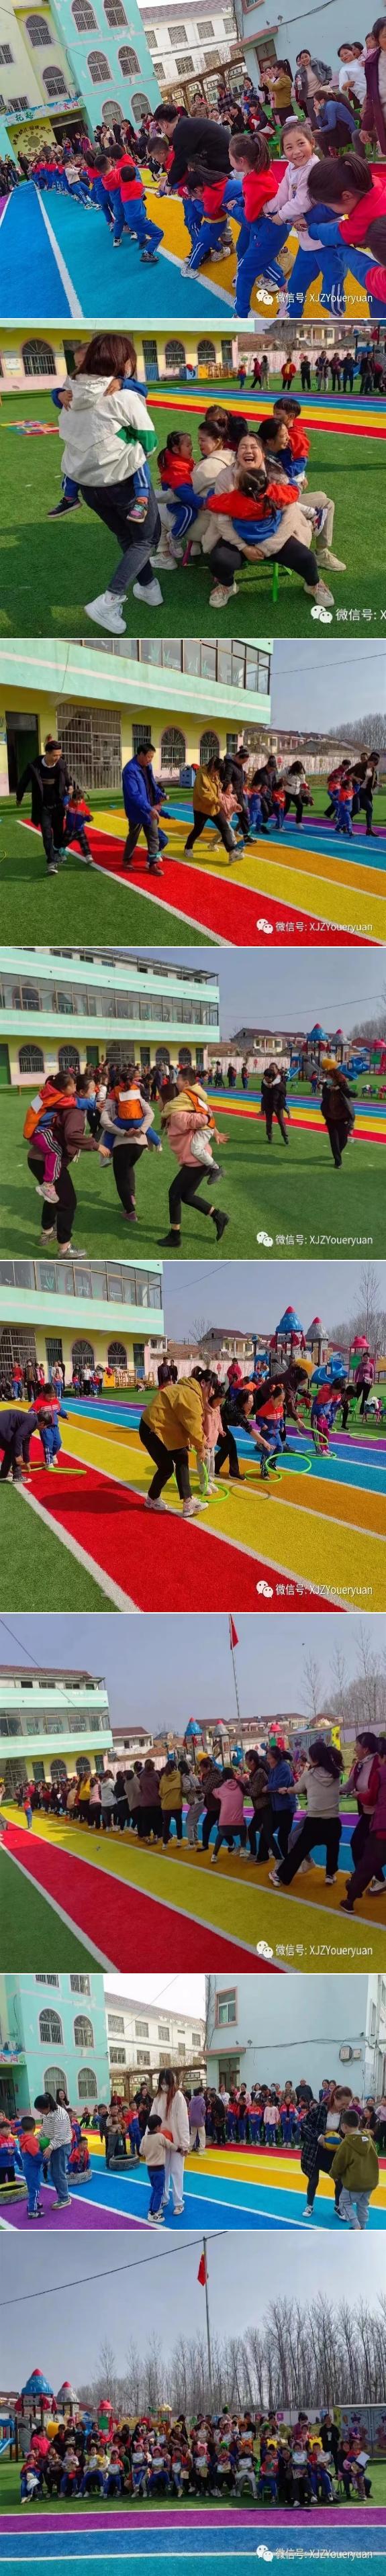 灌南县新集镇中心幼儿园开展 “美好春日、悦动成长”主题亲子运动会